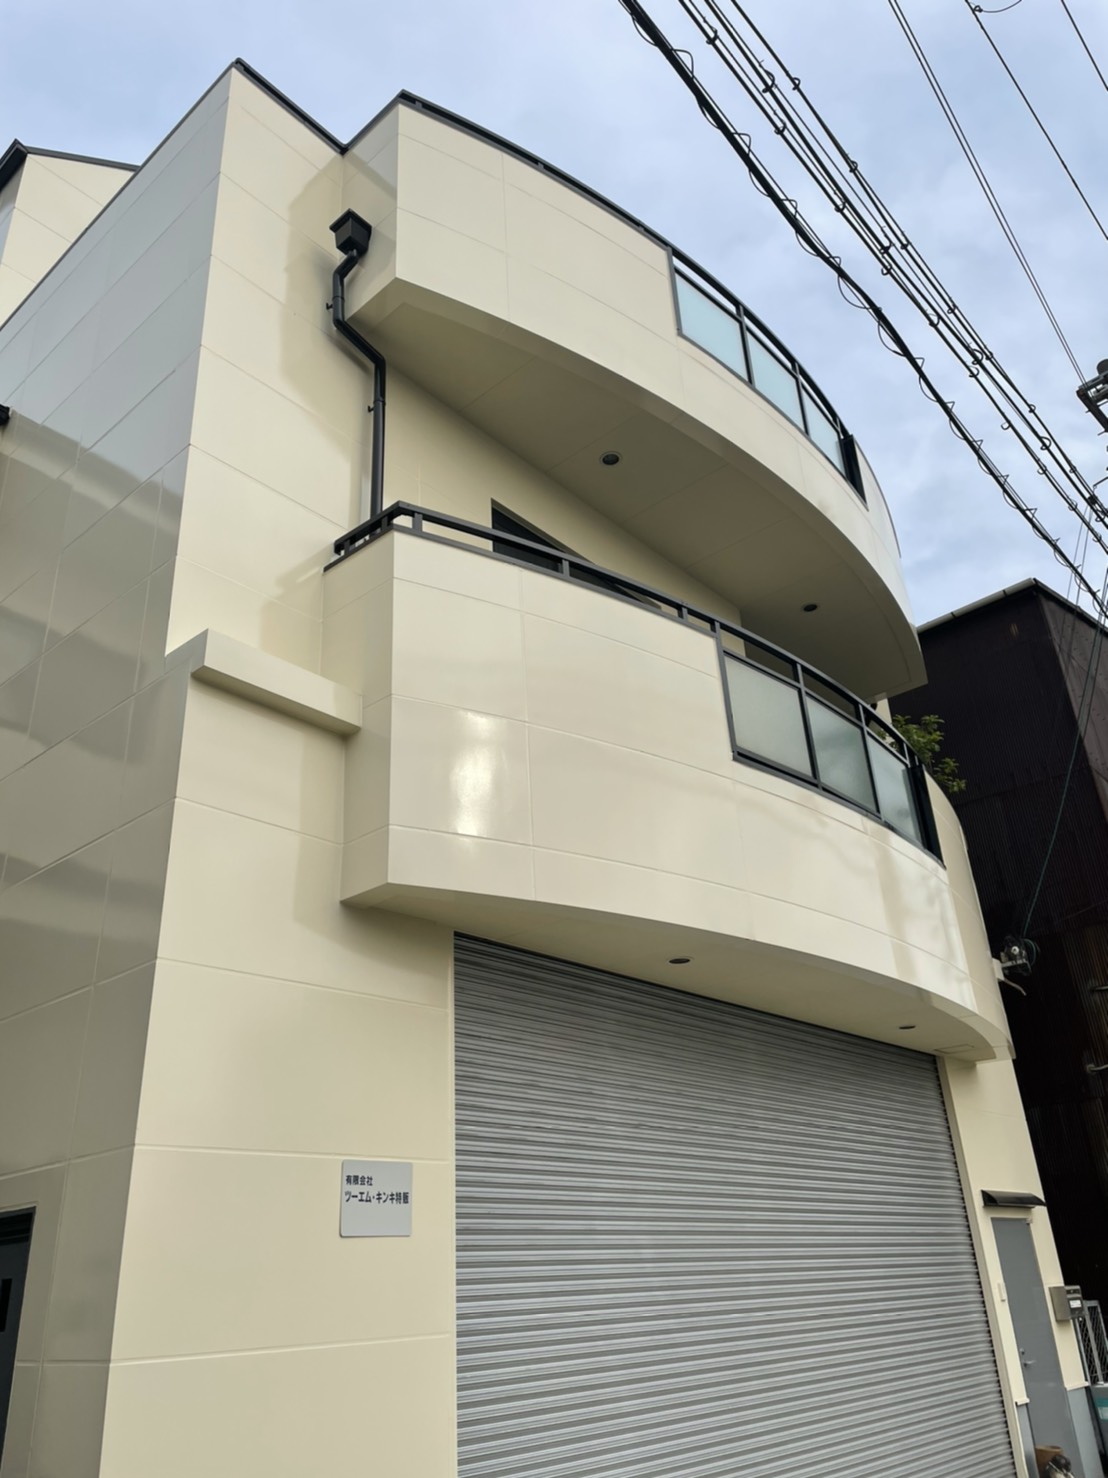 クリーンな外壁色でながもち！ | 堺市の外壁塗装専門店 千成工務店